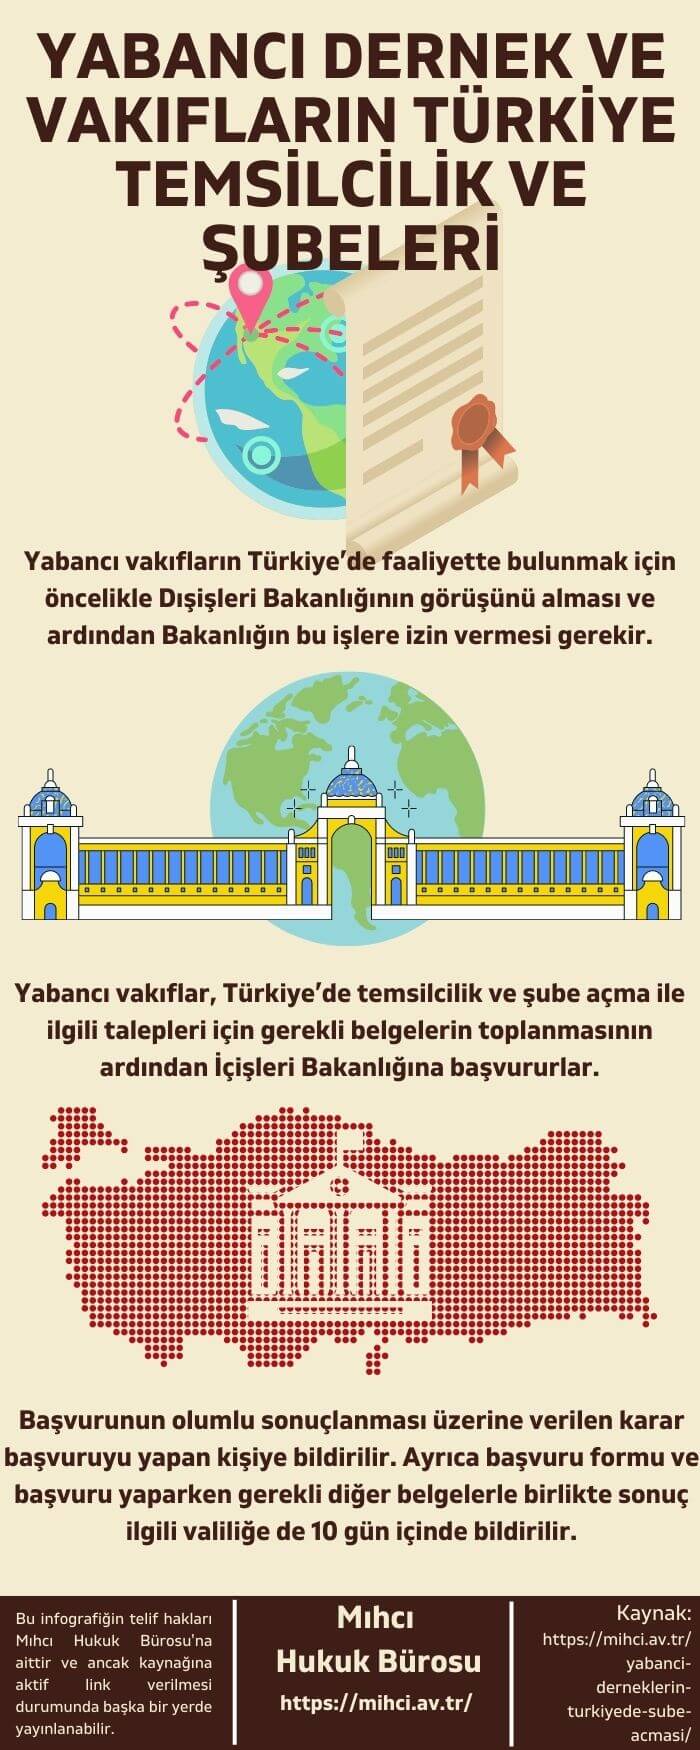 Yabancı Dernek Ve Vakıfların Türkiye Şubeleri infografik